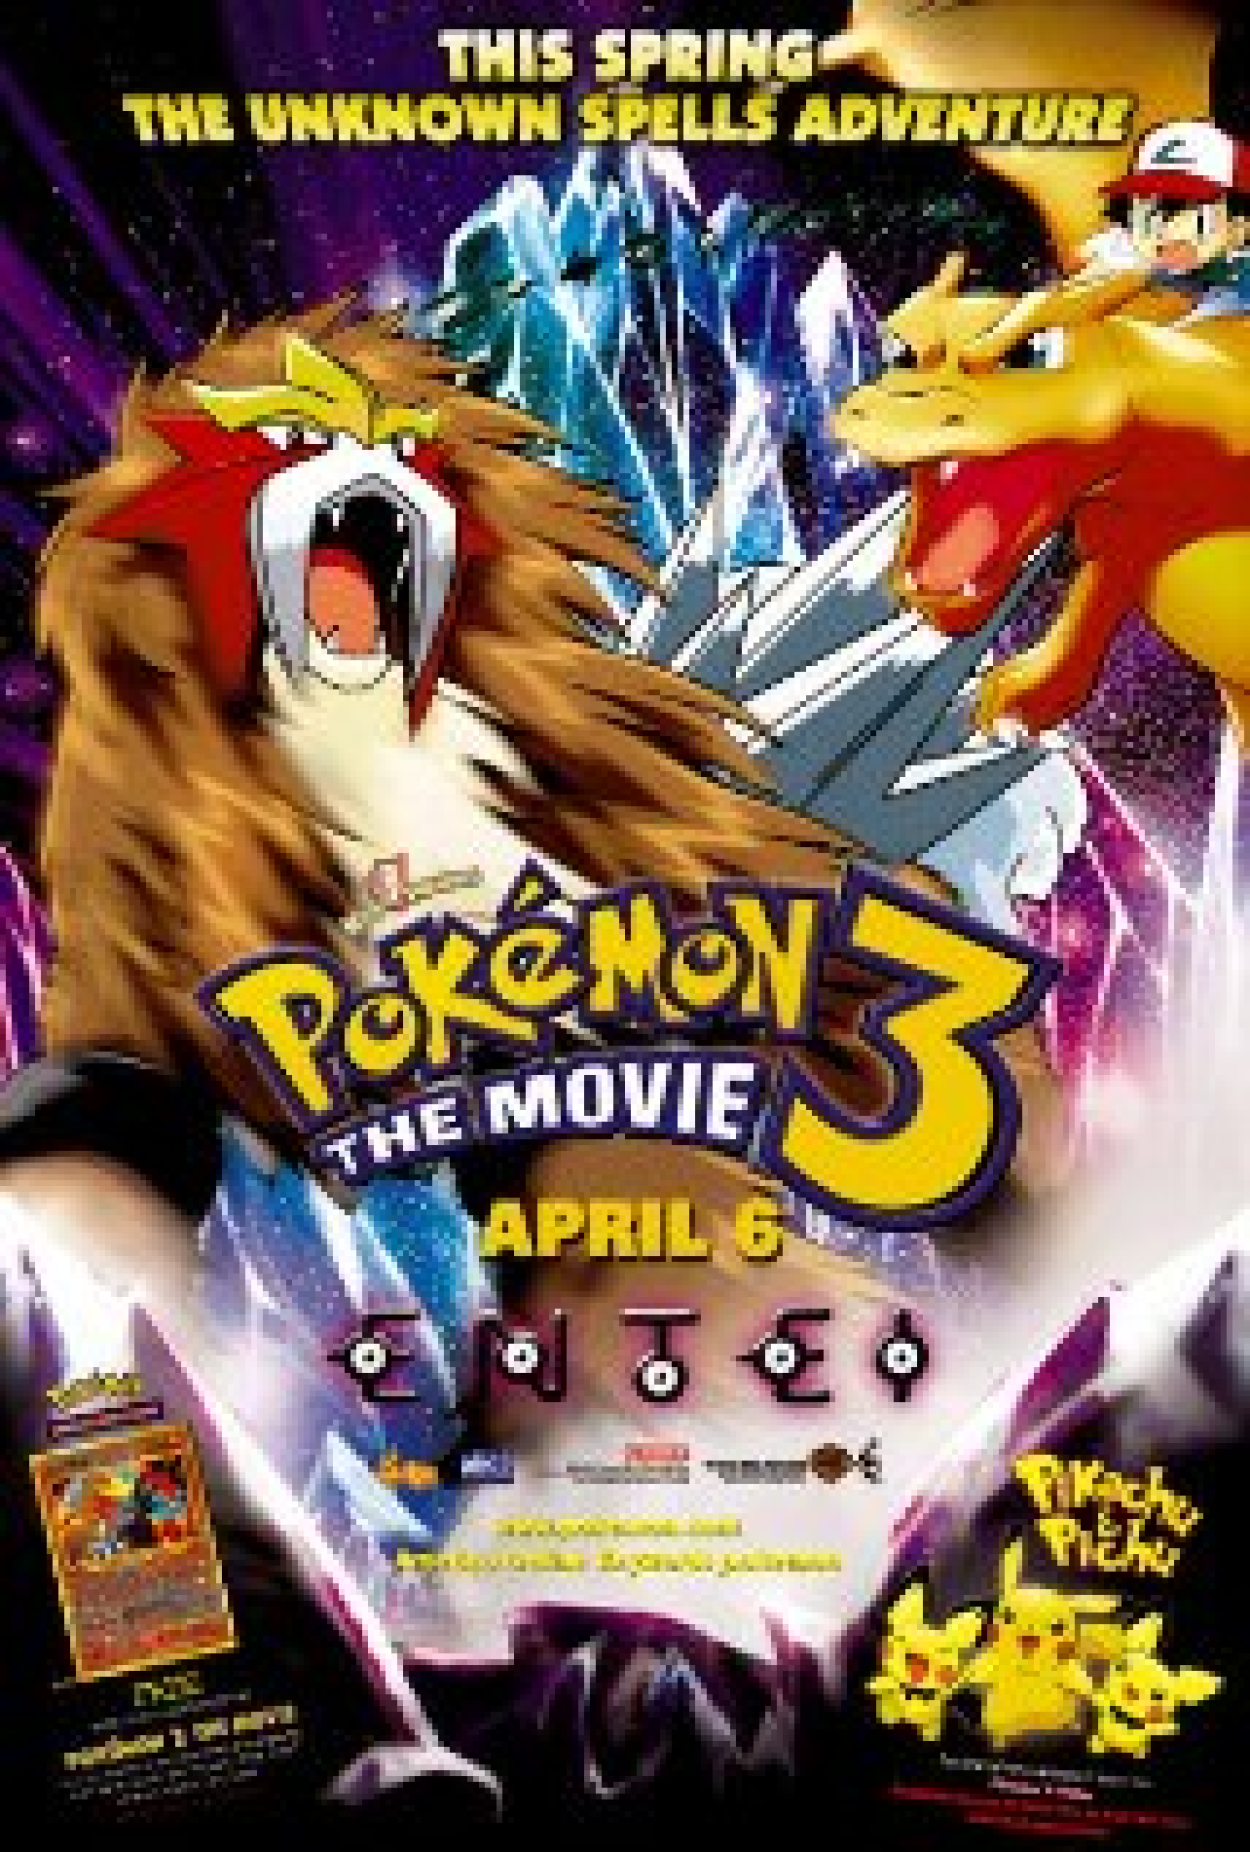 Pokémon 3 (Filme), Trailer, Sinopse e Curiosidades - Cinema10